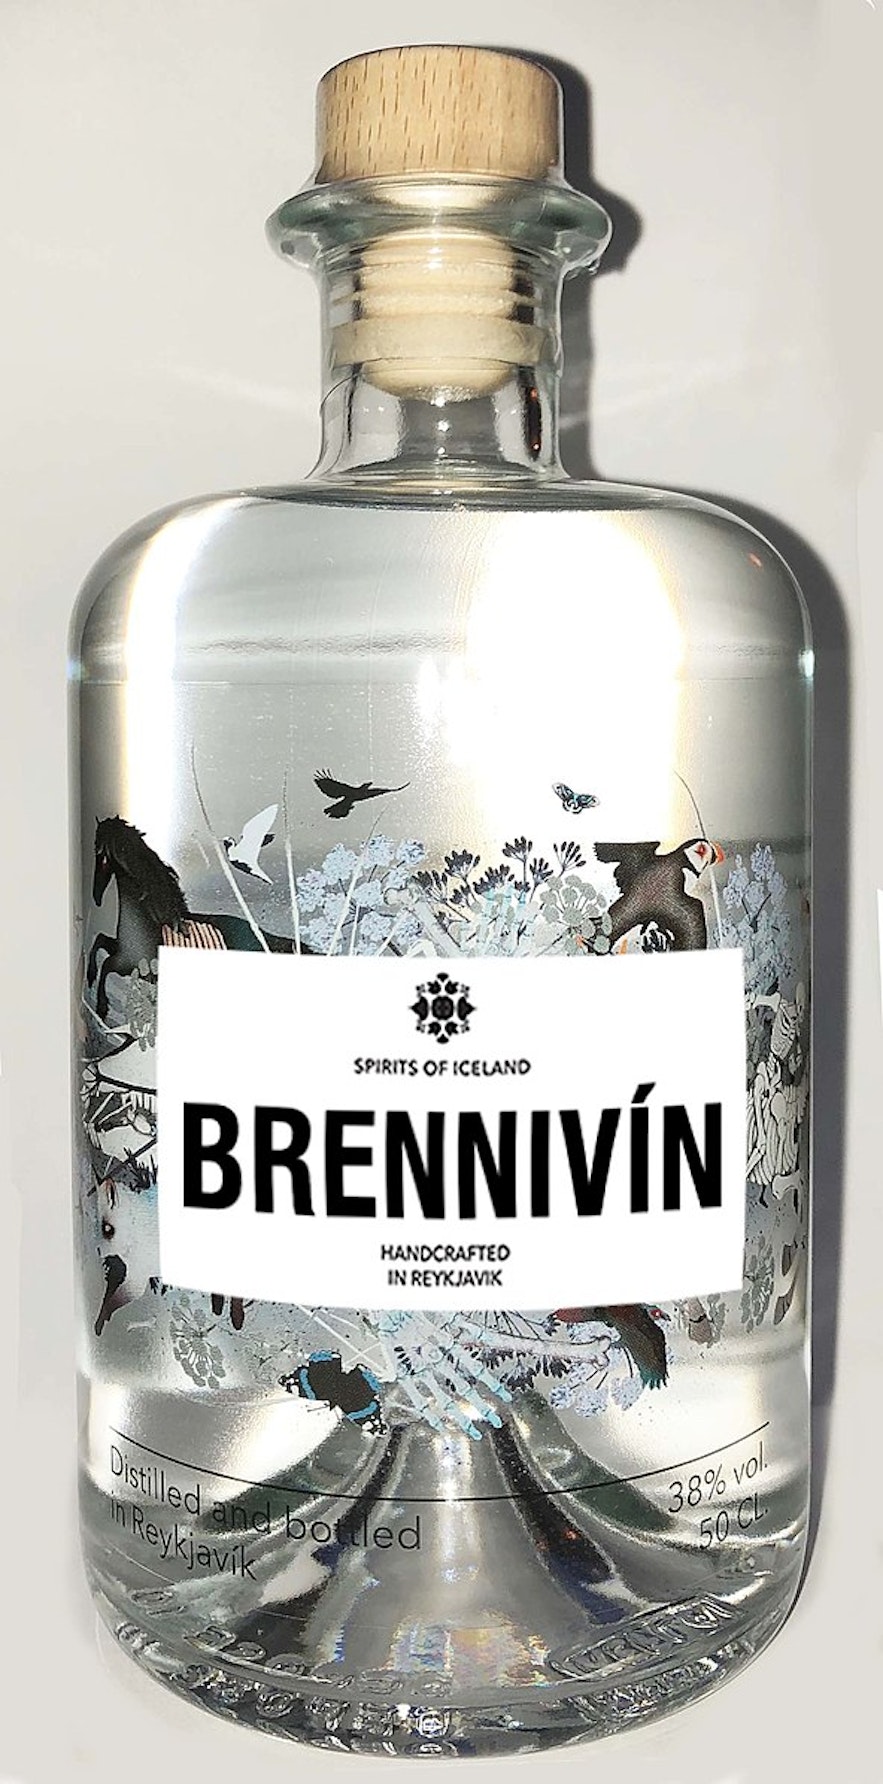 Iceland's signature distilled beverage is Brennivín